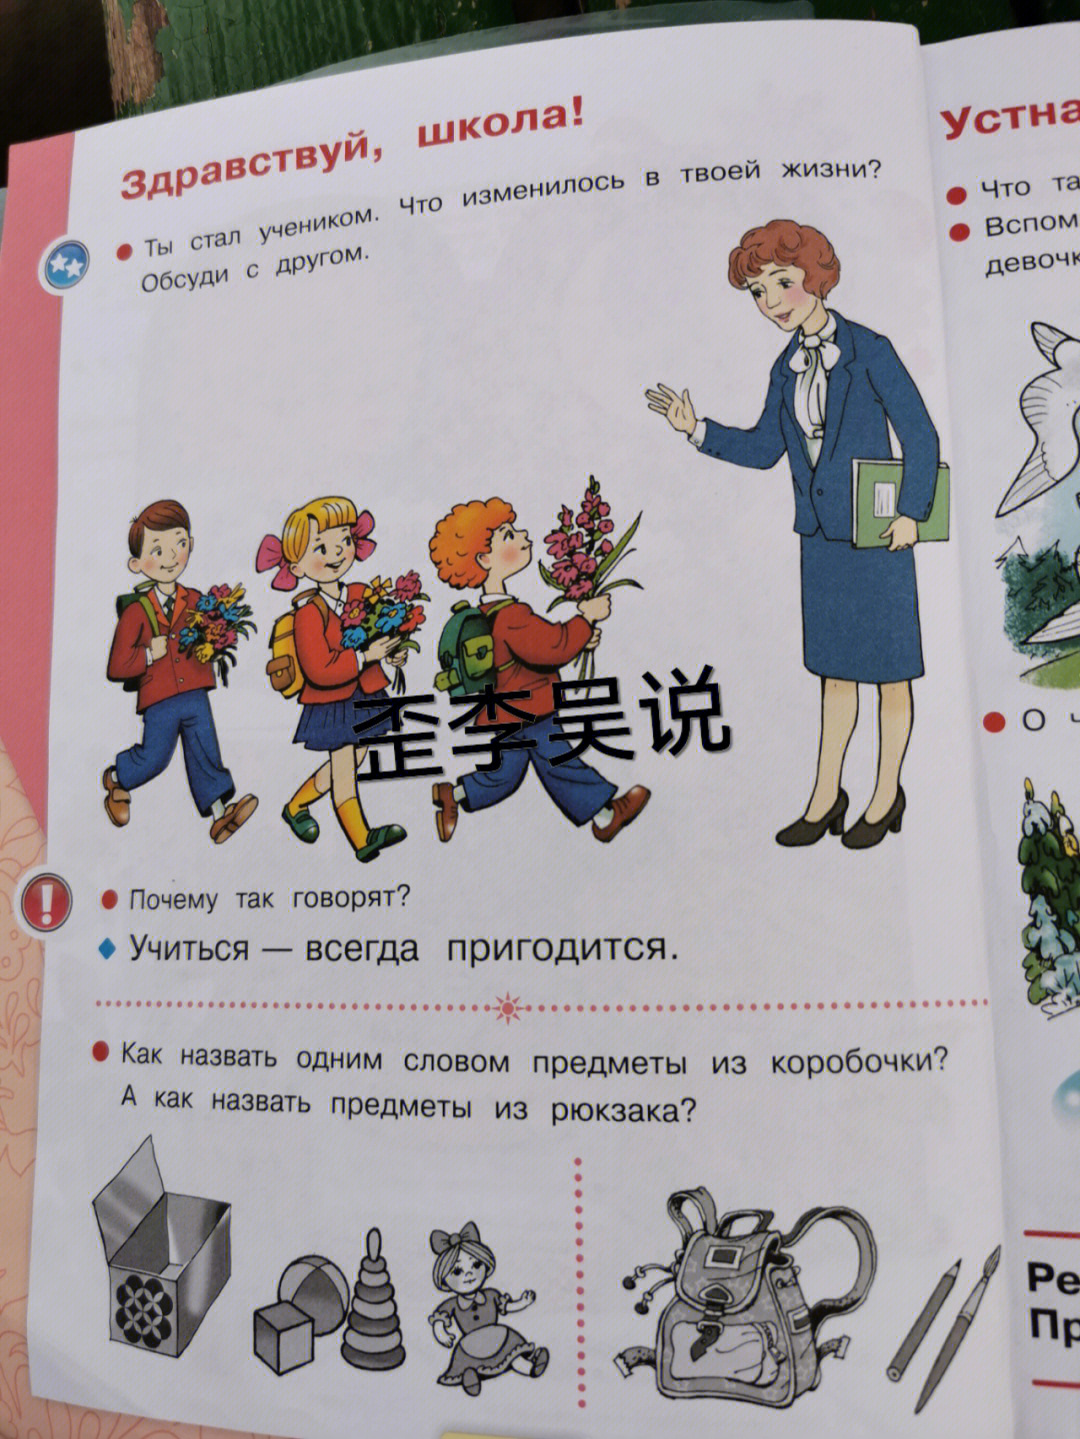 俄语常用语大全，轻松学习日常俄语